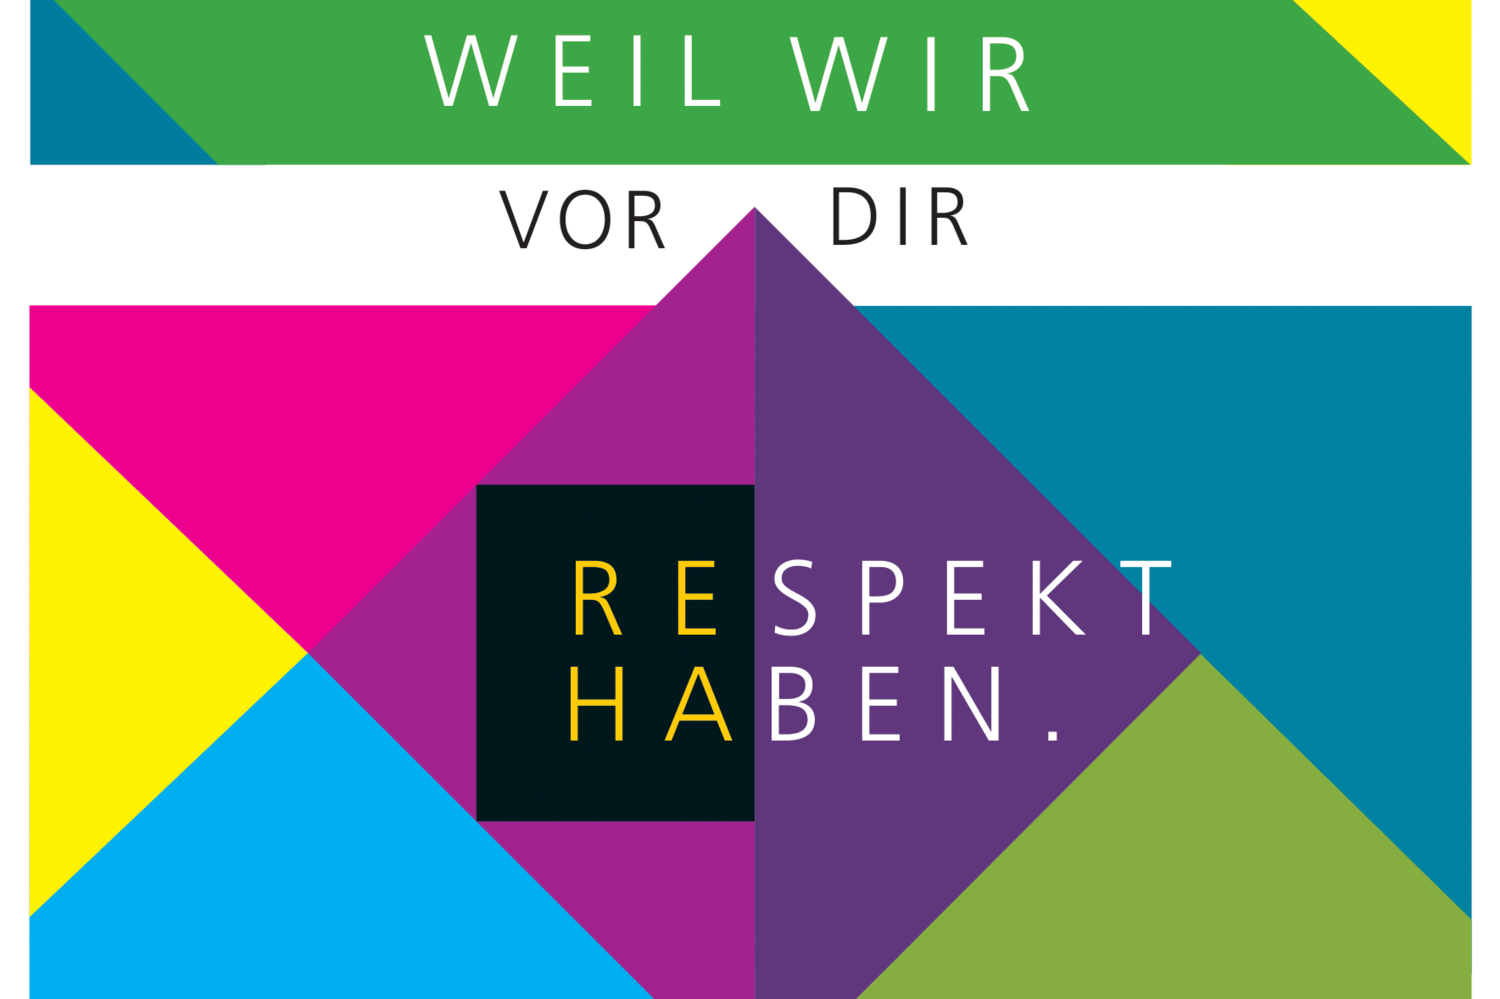 Das Bild zeigt die Farben des Logos der reha gmbh und zeigt den Schriftzug "Weil wir vor die Respekt haben".